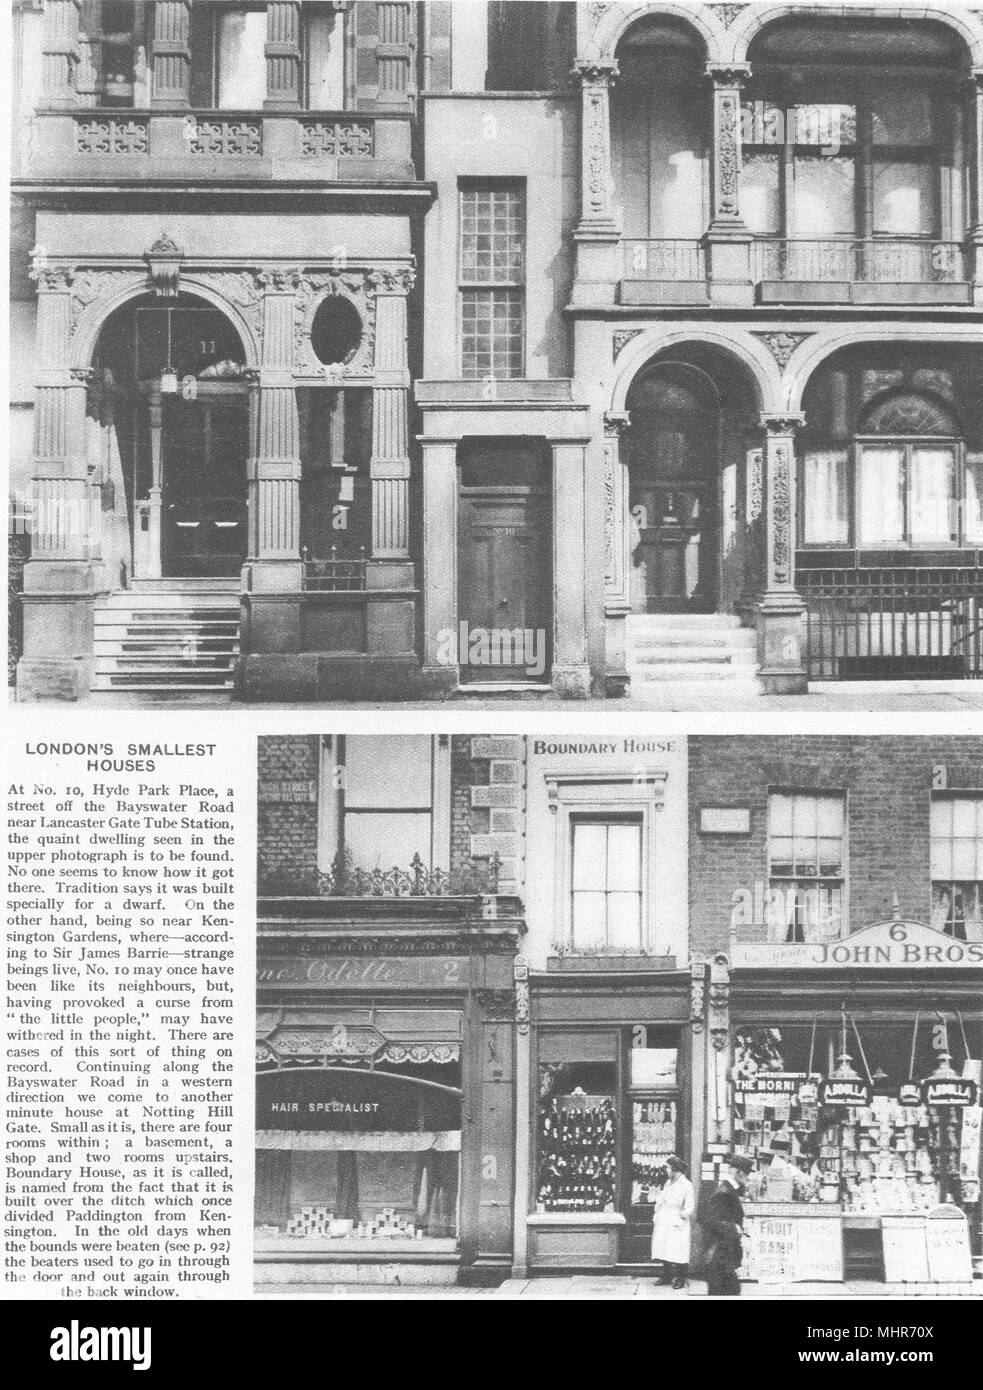 Le plus petit LONDRES MAISONS. 10 Hyde Park Place. Maison limite, Notting Hill 1926 Banque D'Images